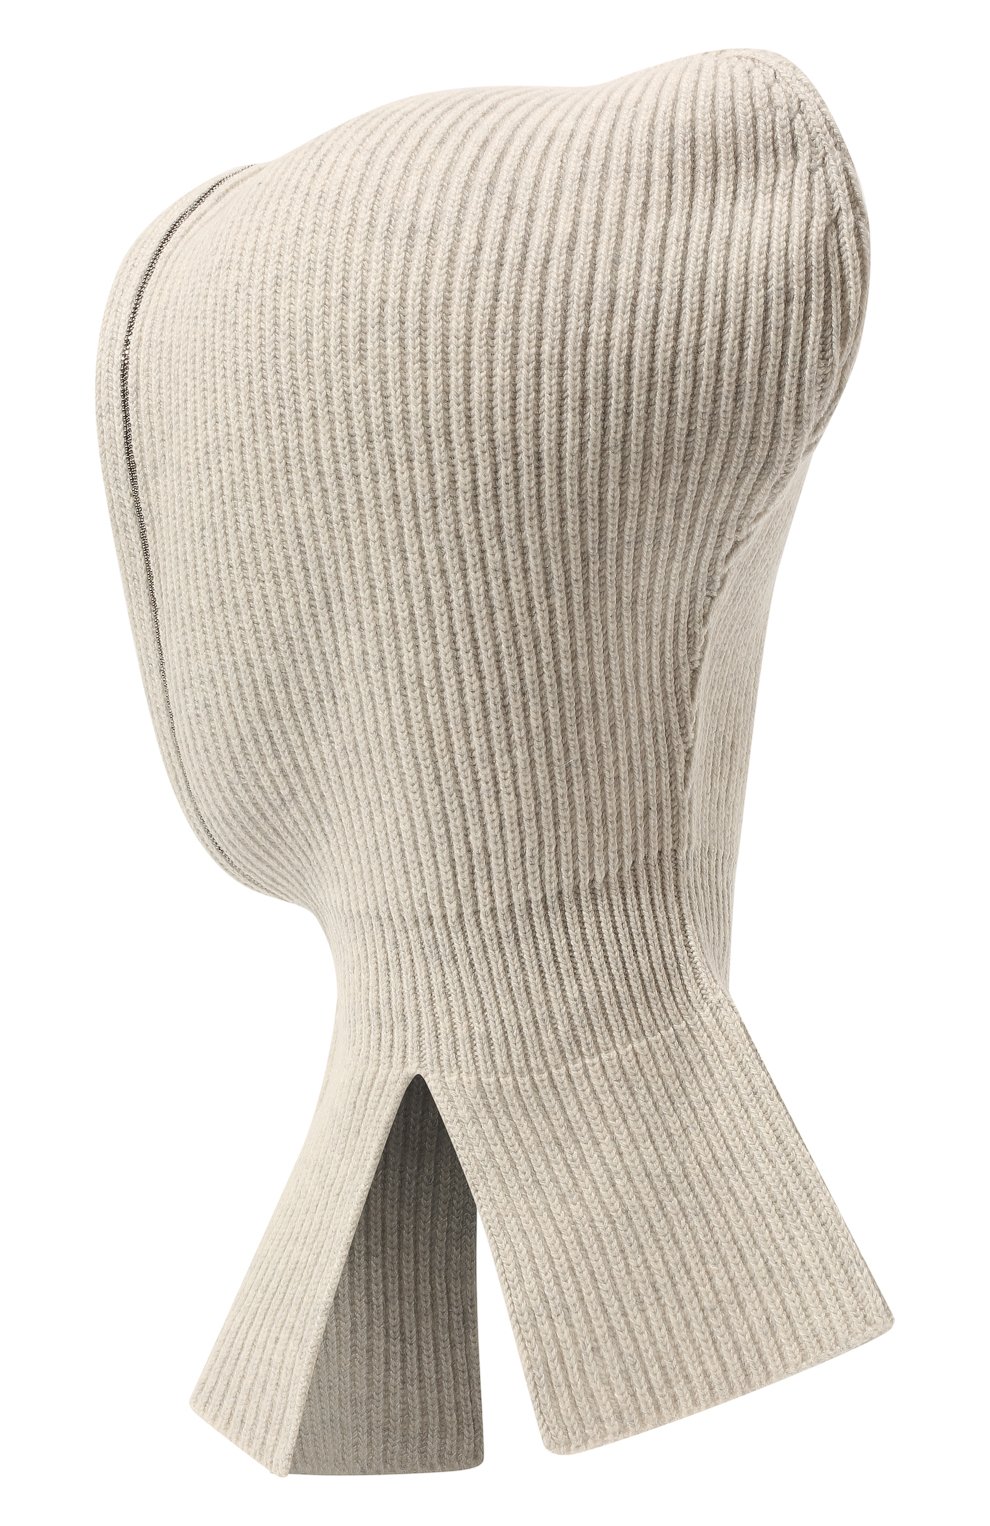 Детского шапка-балаклава из кашемира BRUNELLO CUCINELLI серого цвета, арт. B12M70389B | Фото 2 (Материал: Текстиль, Кашемир, Шерсть)